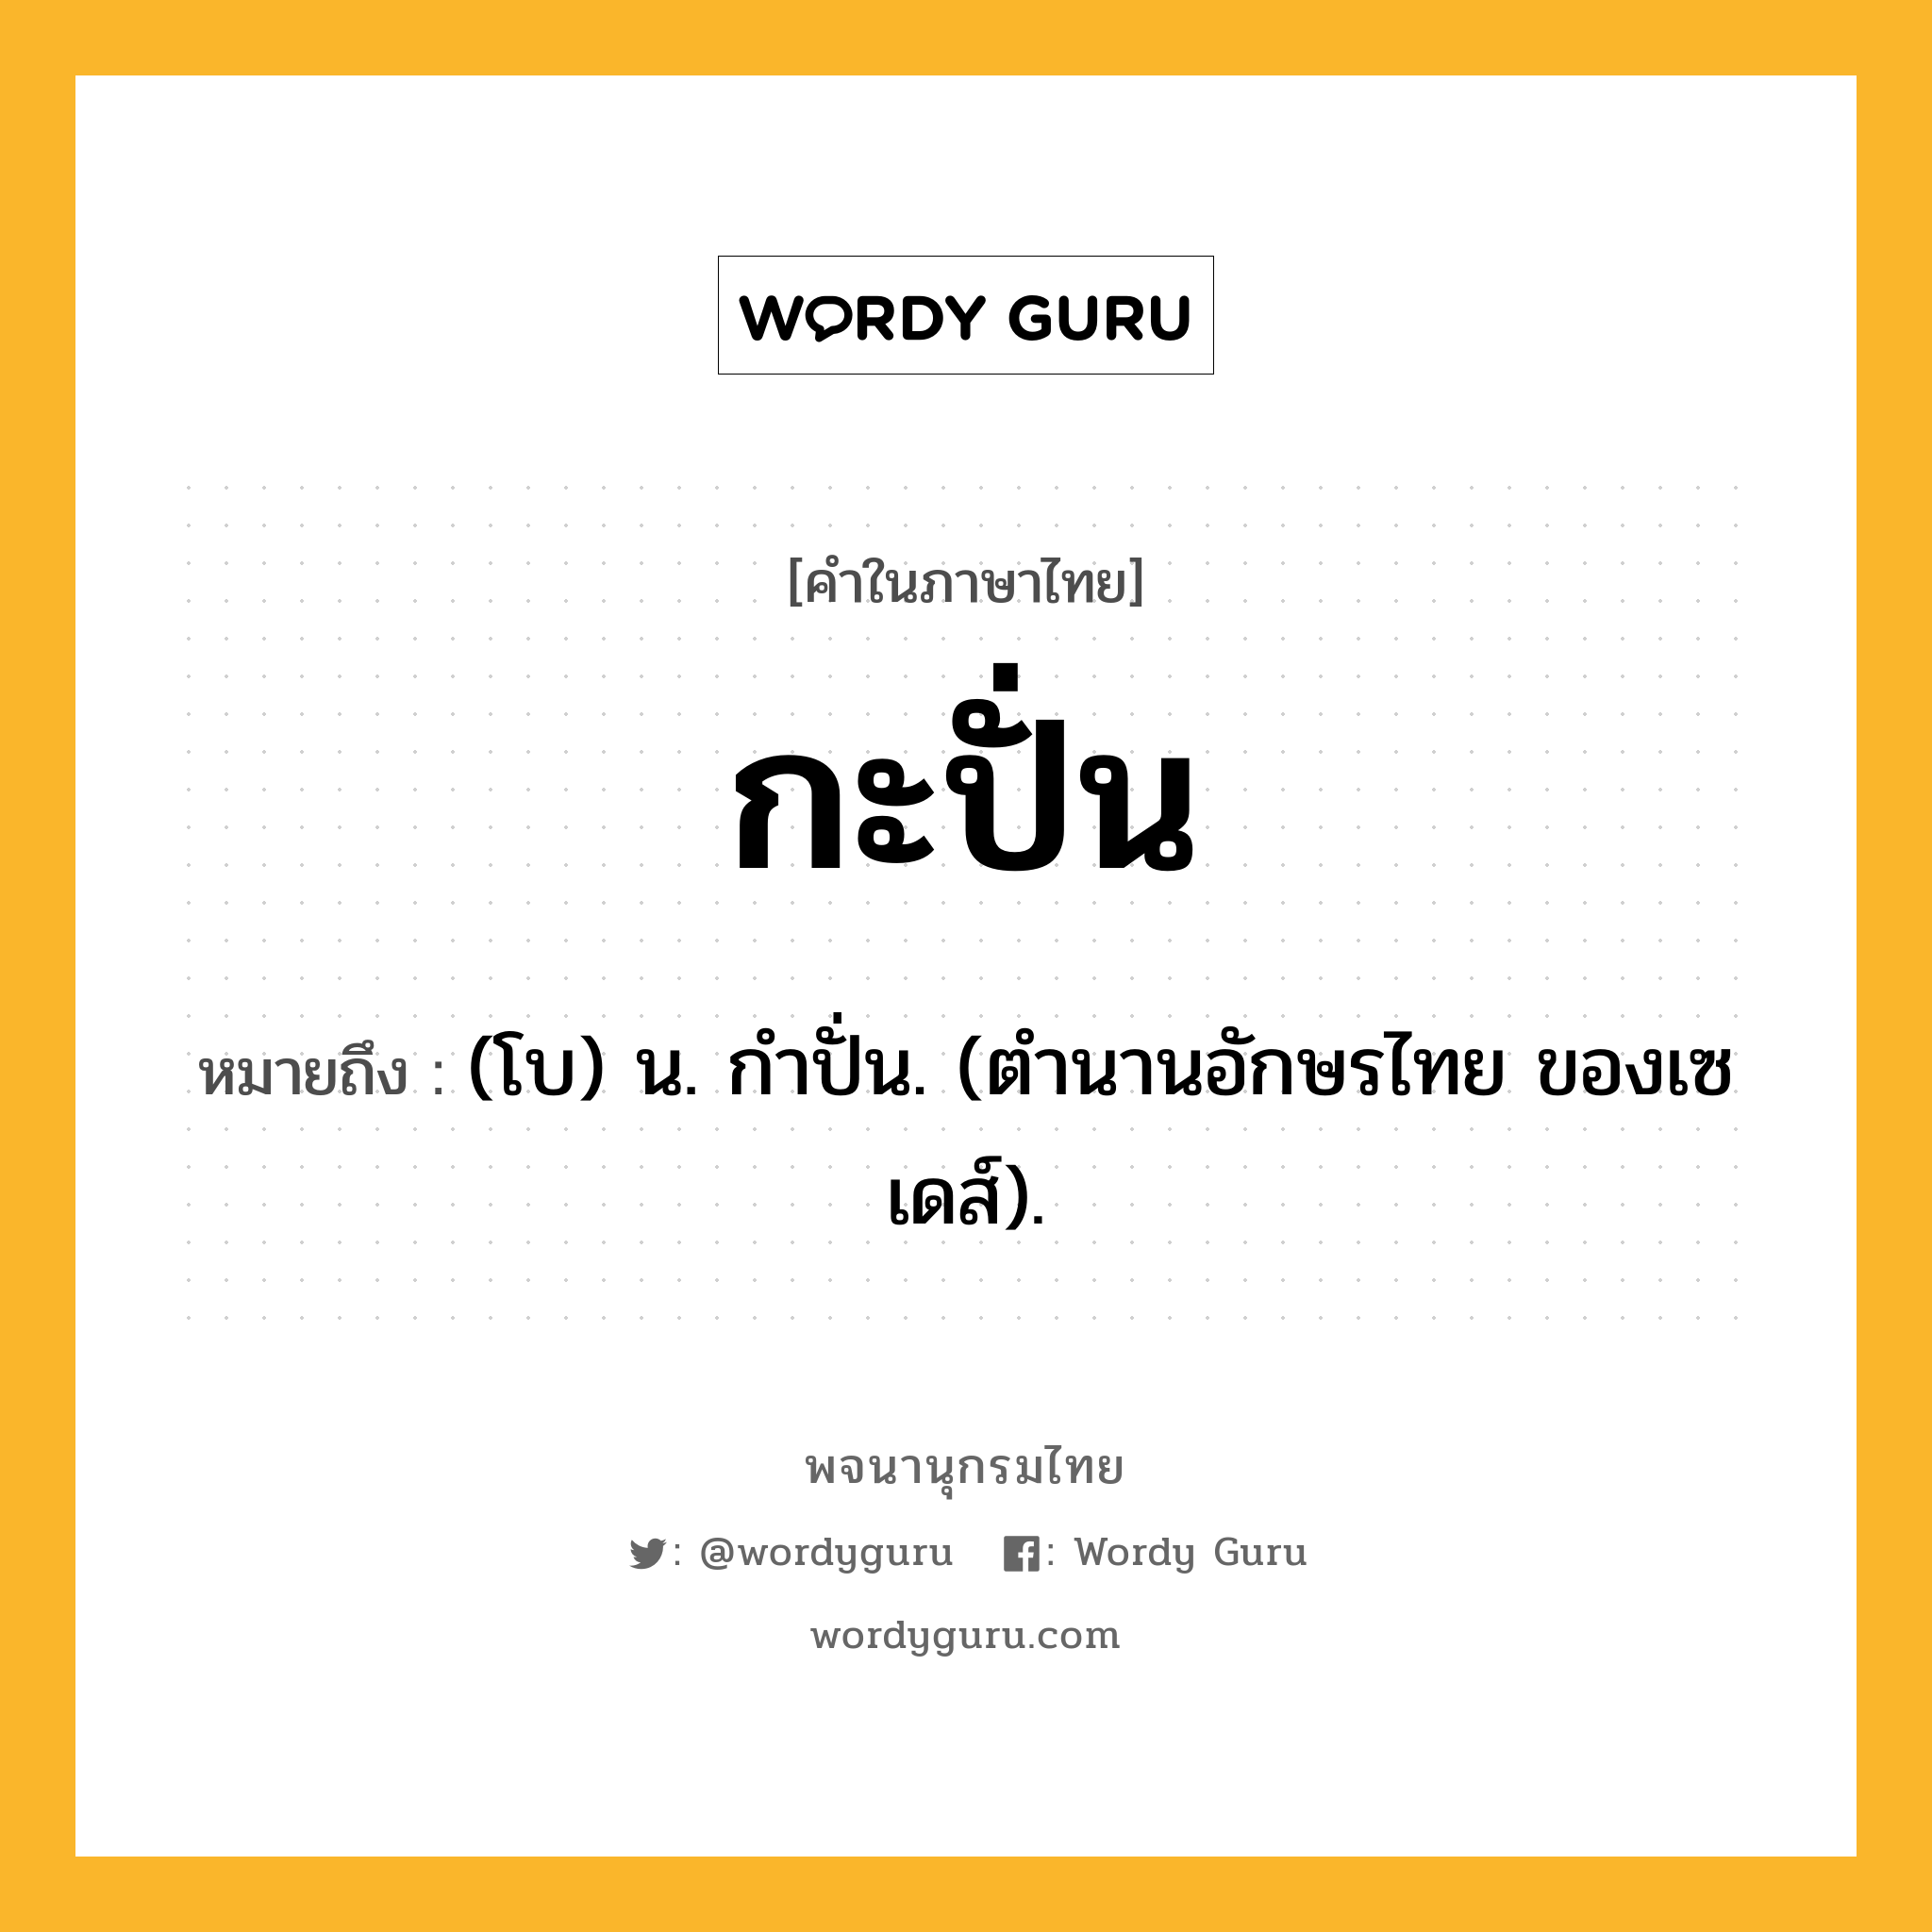 กะปั่น หมายถึงอะไร?, คำในภาษาไทย กะปั่น หมายถึง (โบ) น. กําปั่น. (ตํานานอักษรไทย ของเซเดส์).